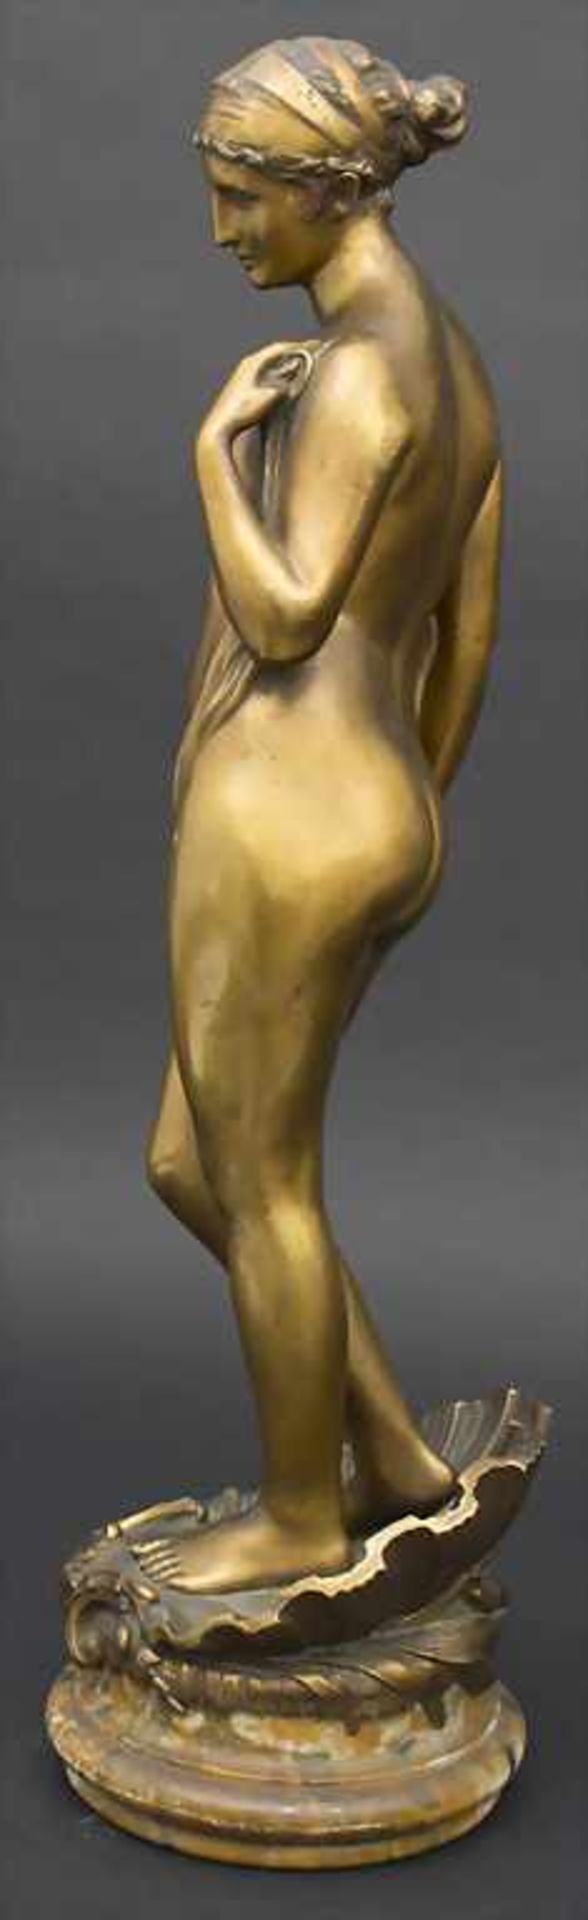 Marcel Rau 1886-1966, Die Geburt der Venus / The birth of Venus, Marcel Rau, 1917Material: Bronze, - Image 4 of 8